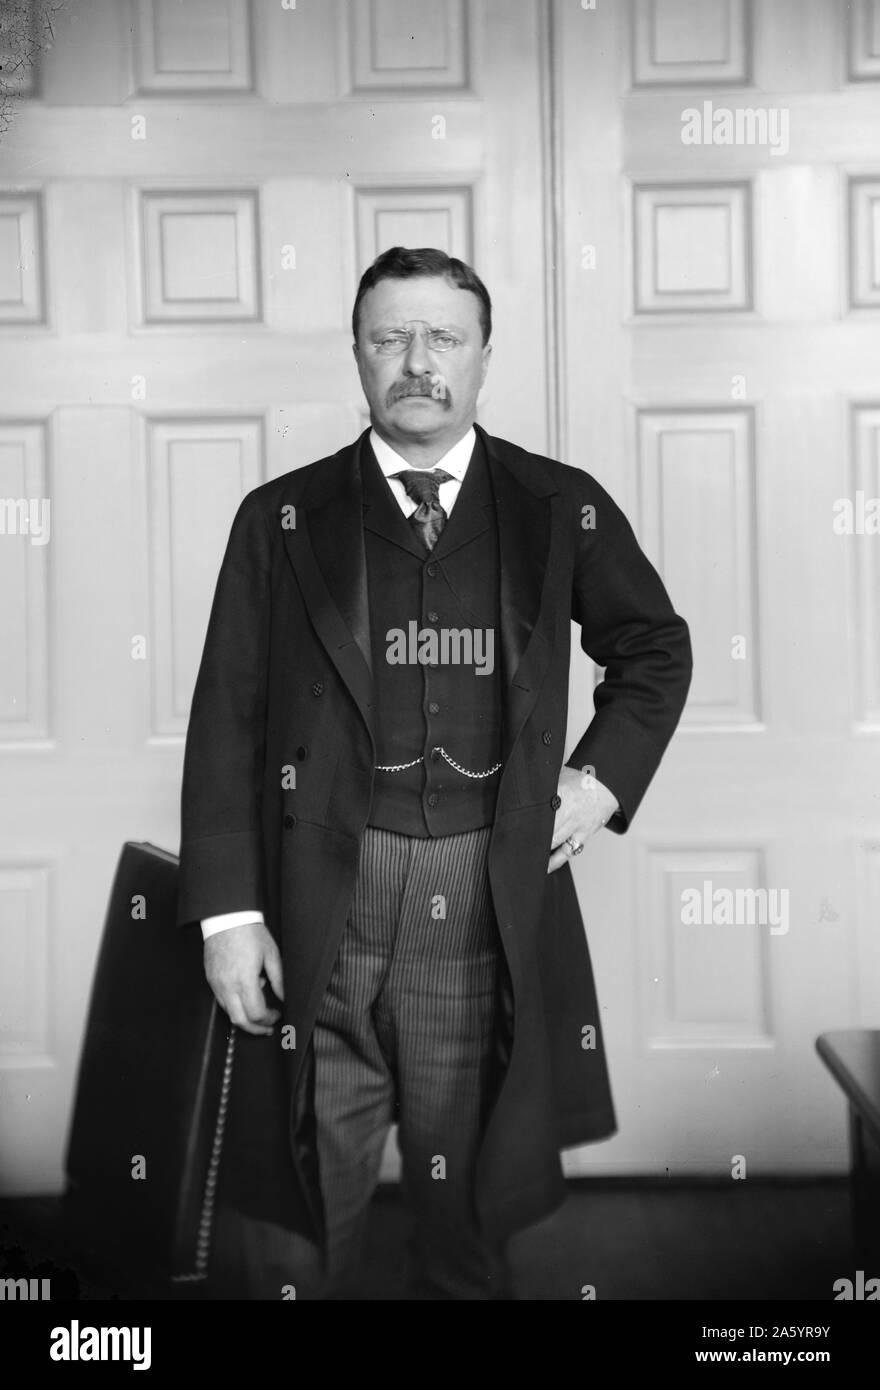 Presidente Theodore Roosevelt (1858-1919) ventiseiesimo Presidente degli Stati Uniti, uomo politico americano, autore, naturalista, soldato, explorer e storico. Datata 1900 Foto Stock